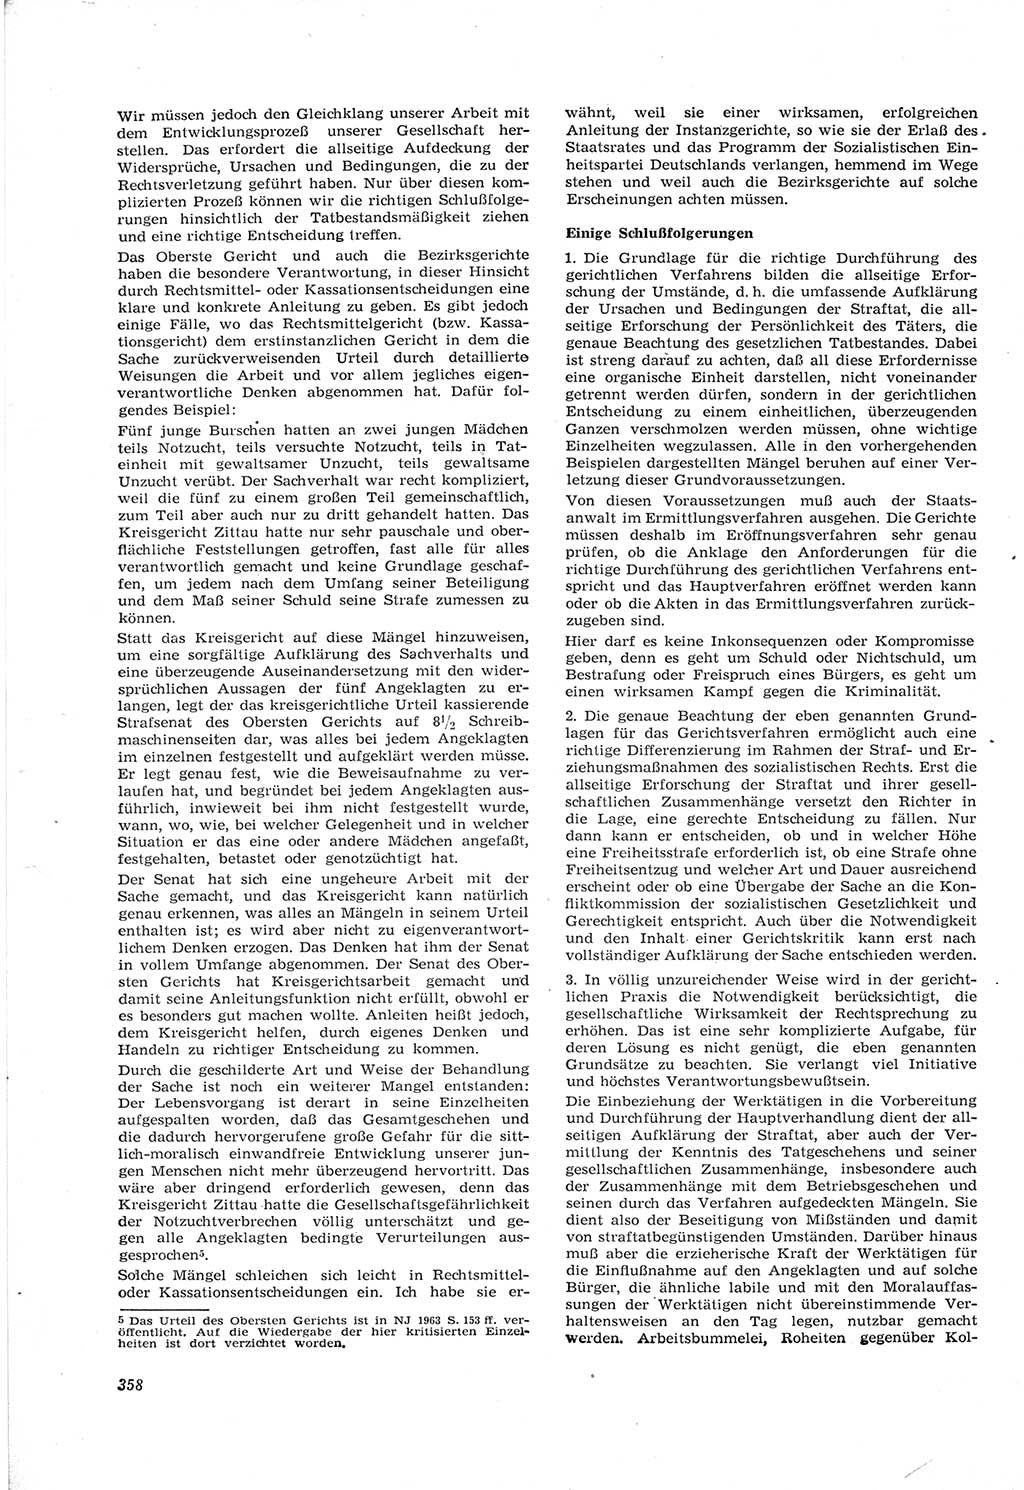 Neue Justiz (NJ), Zeitschrift für Recht und Rechtswissenschaft [Deutsche Demokratische Republik (DDR)], 17. Jahrgang 1963, Seite 358 (NJ DDR 1963, S. 358)